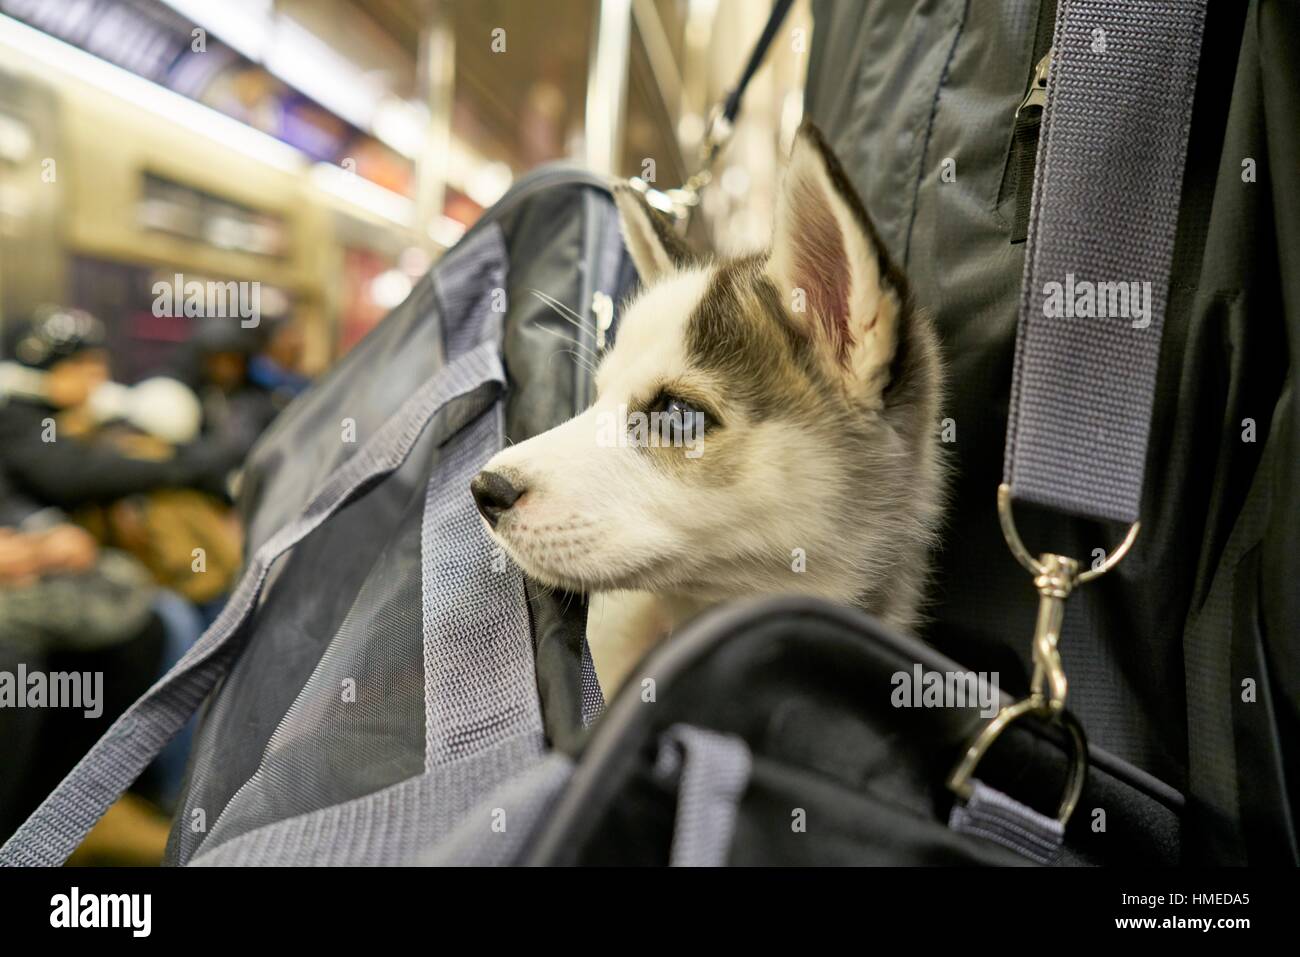 Eine schöne husky Welpen Hund in der Tasche seines Besitzers. New Yorker U- Bahn, USA Stockfotografie - Alamy